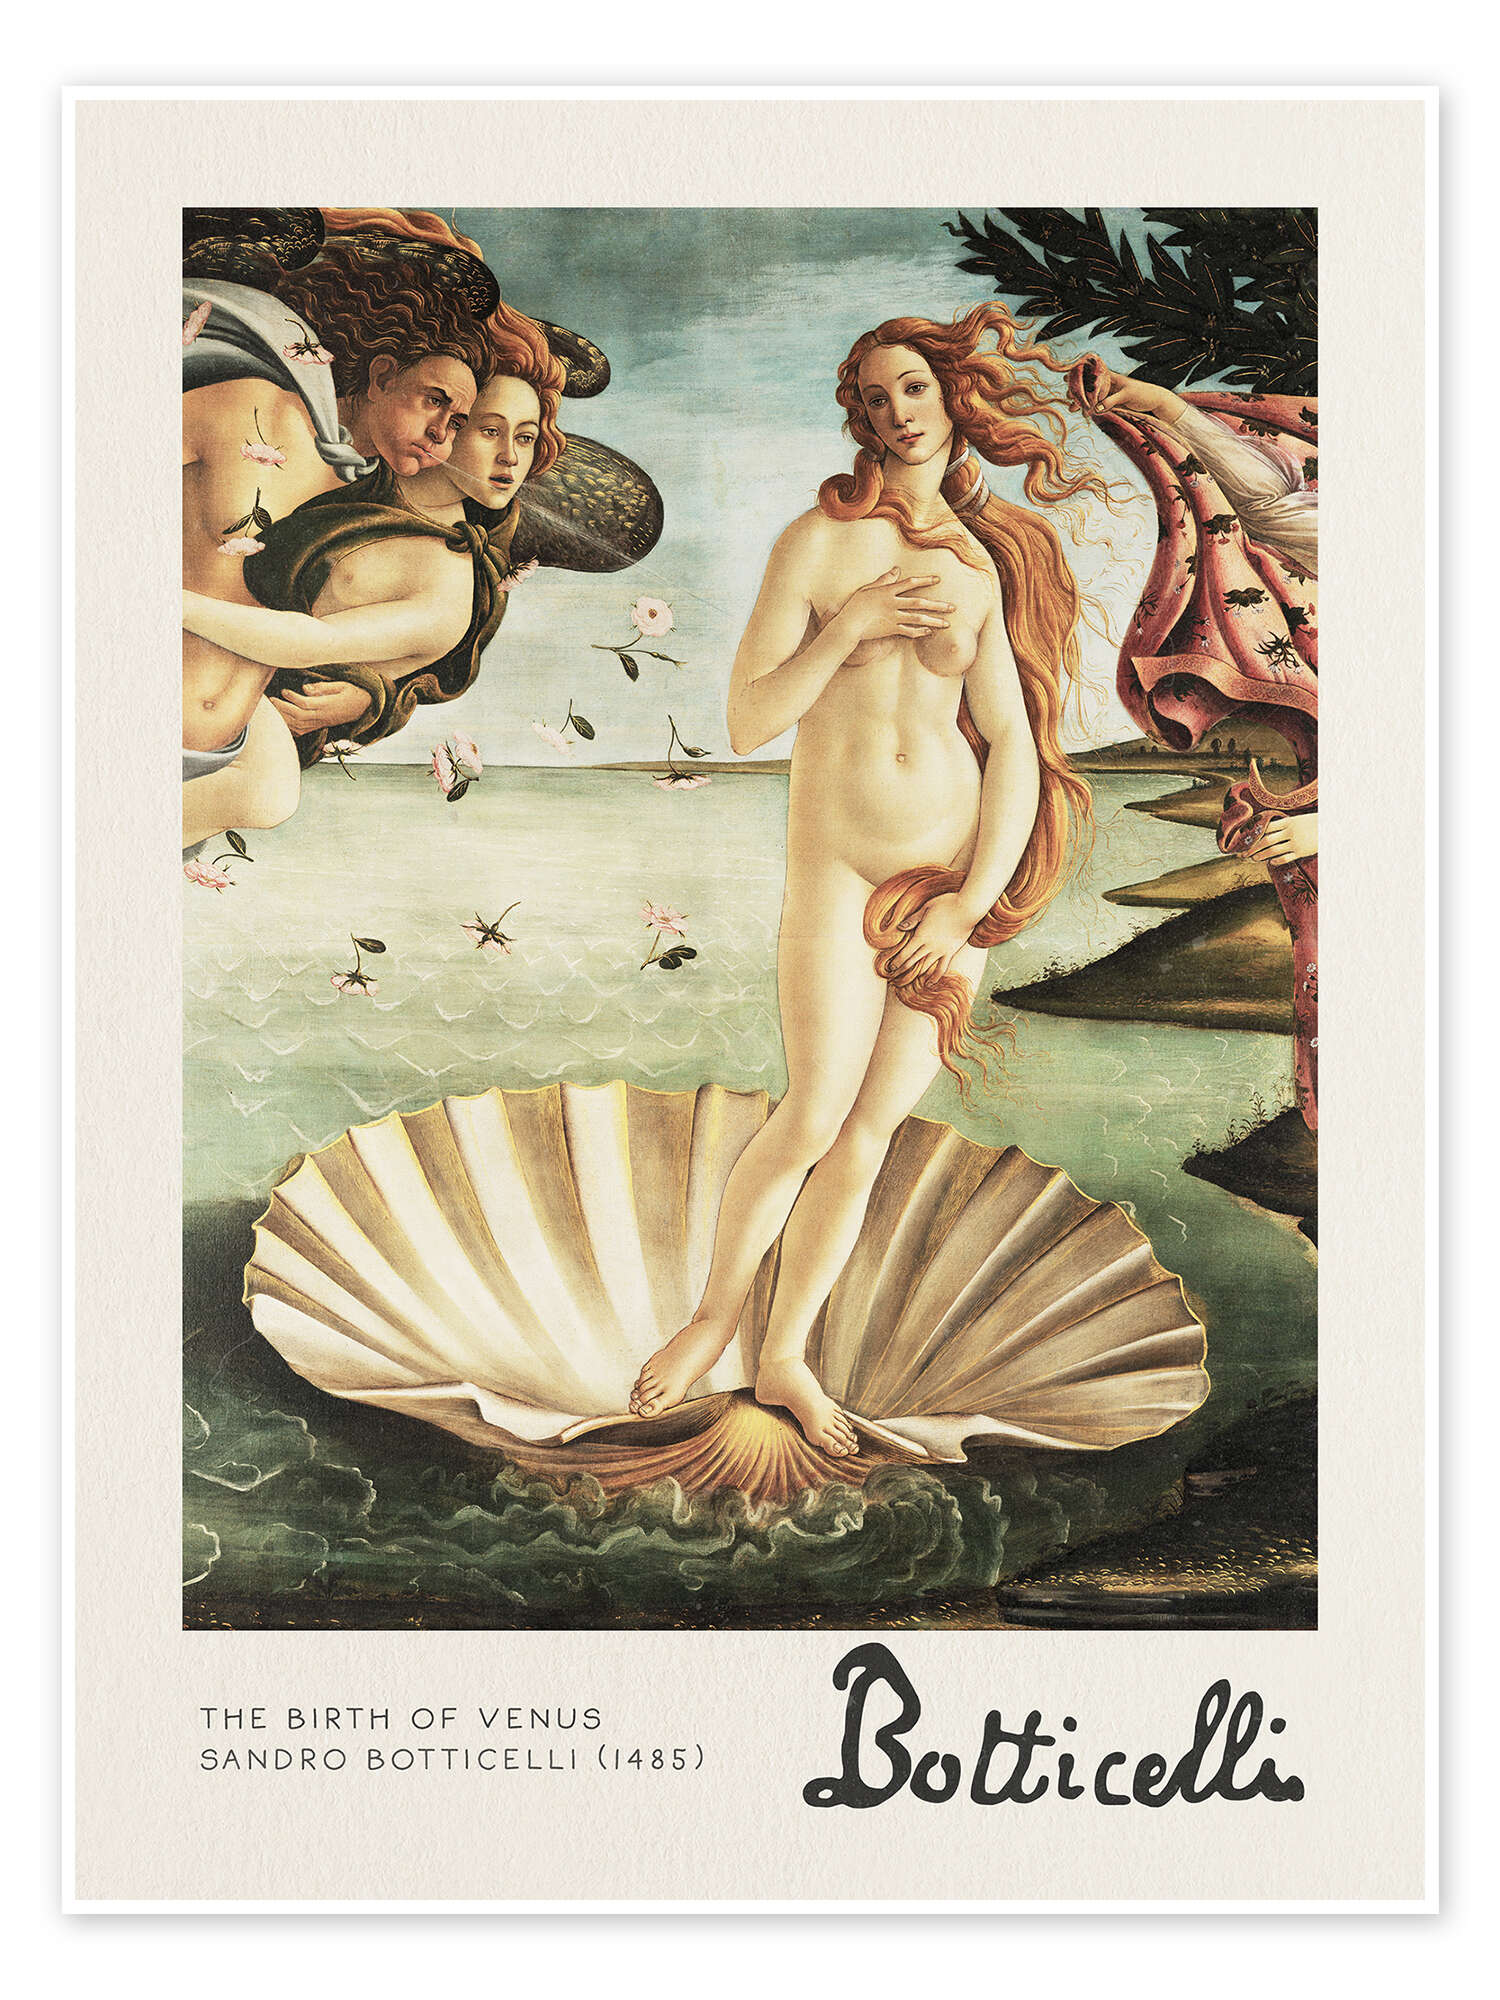 The Birth of Venus af Sandro som plakat, lærredsbillede mere | Posterlounge.dk